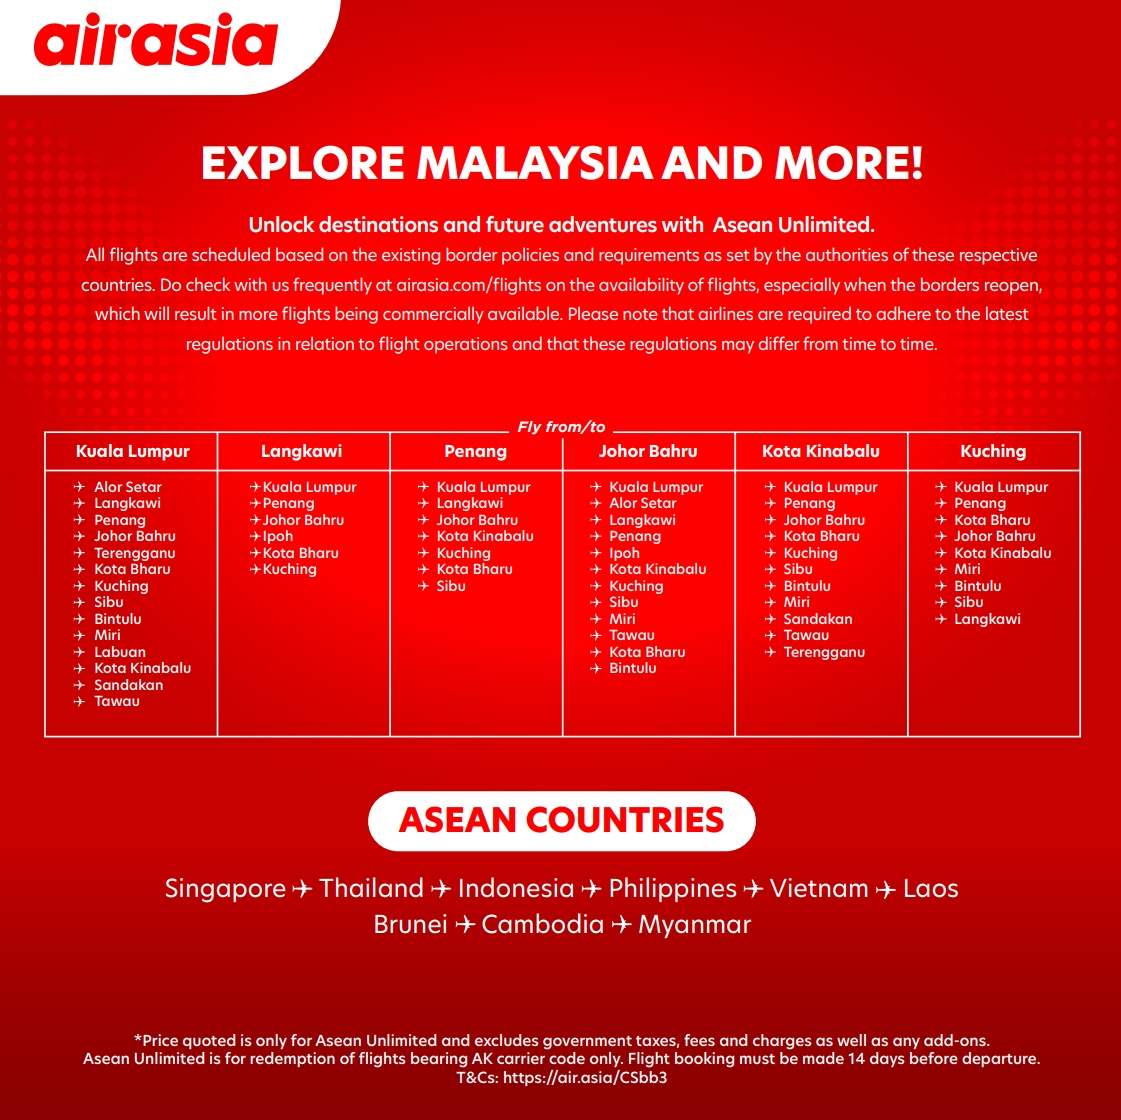 Air tiket asia langkawi Travel Advisory: